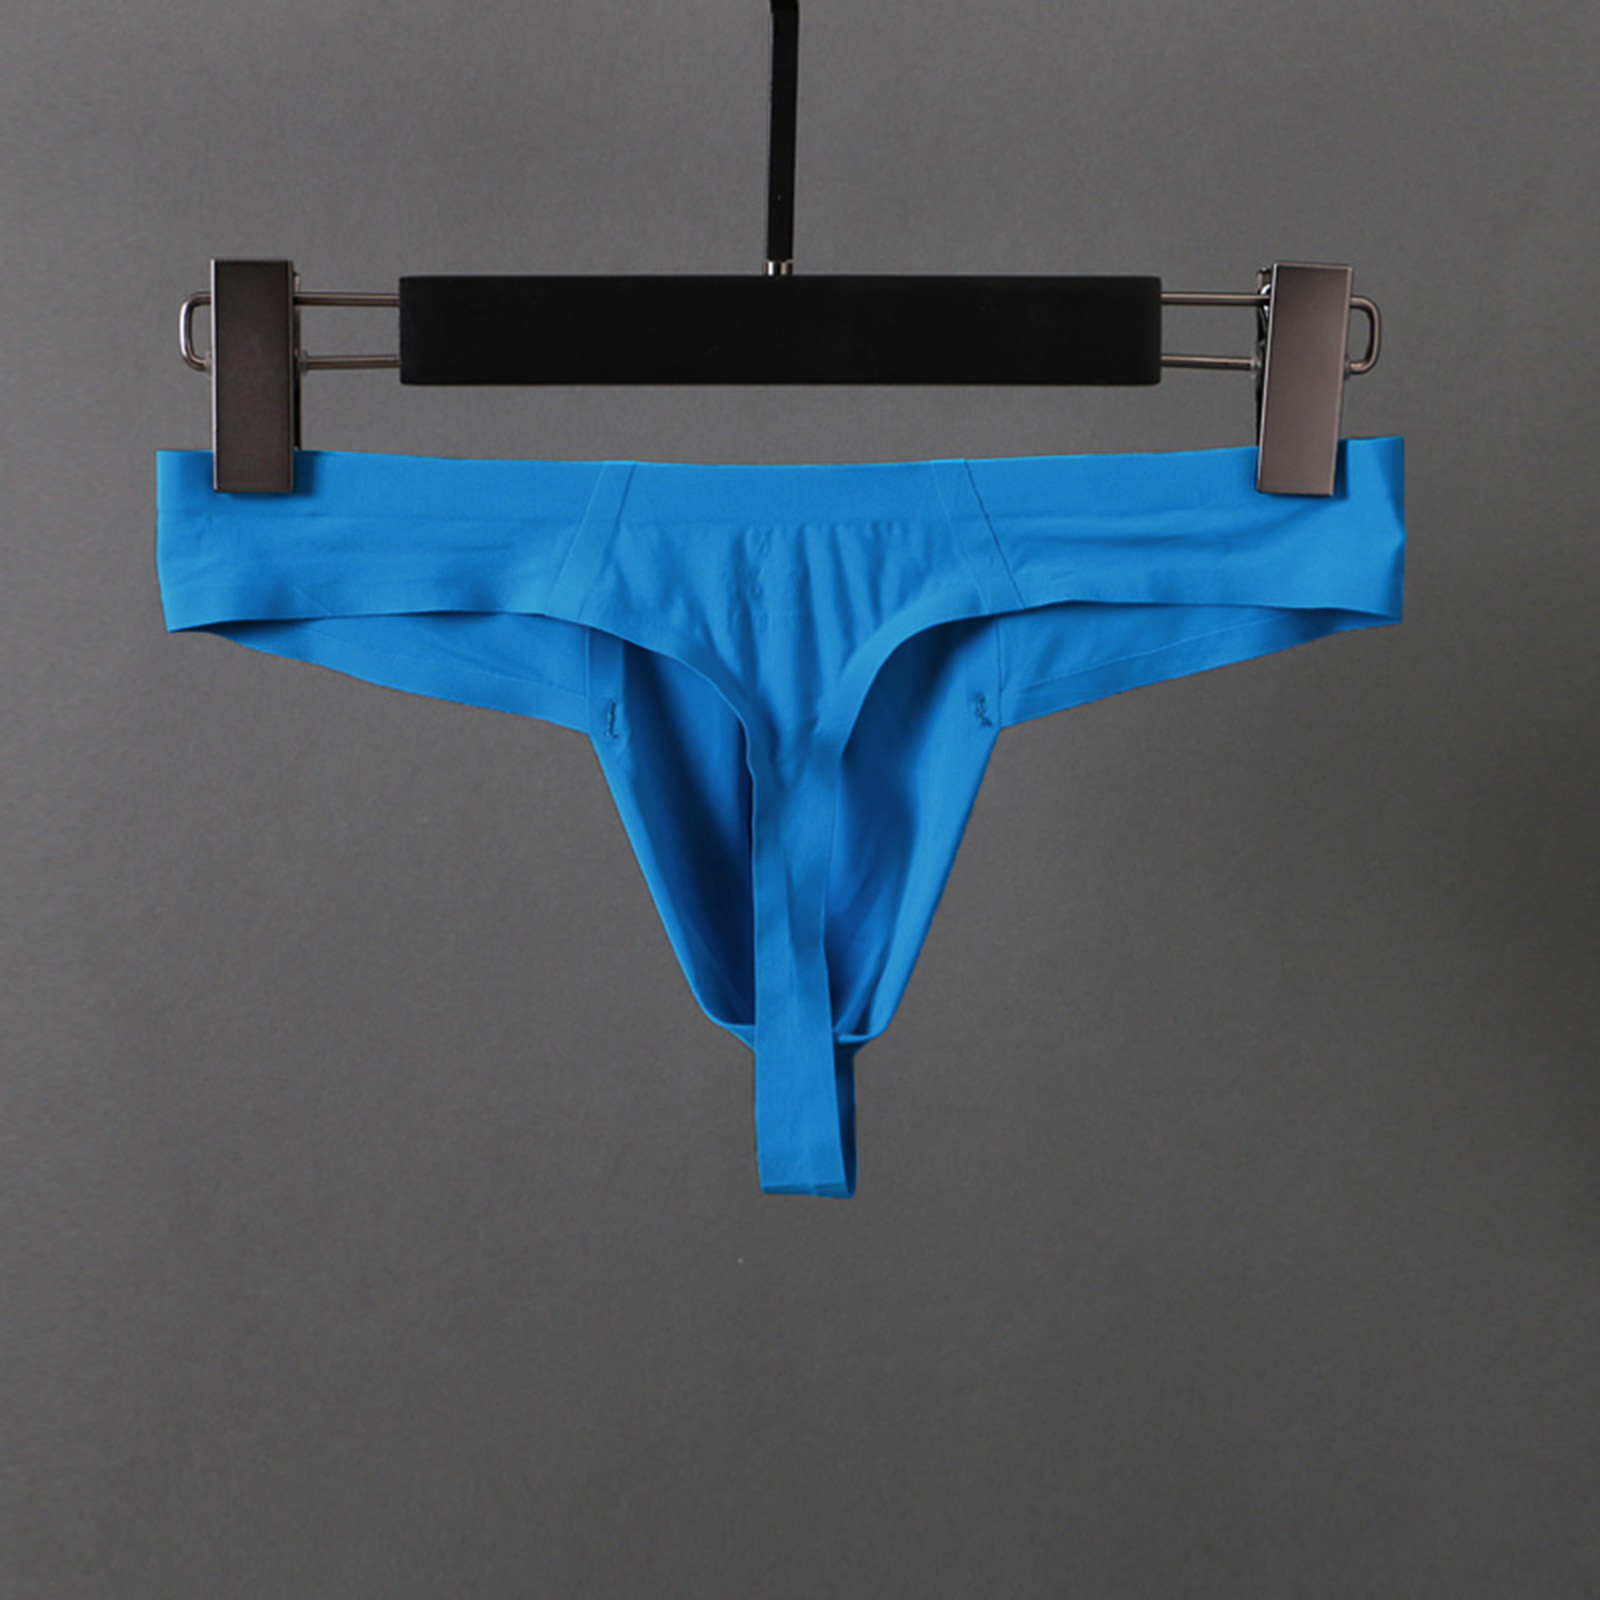 Zuwimk Mens Underwear Thong,Men's Camouflage Thong Underwear Low Rise T-back Underwear Sky Blue,M - image 4 of 5